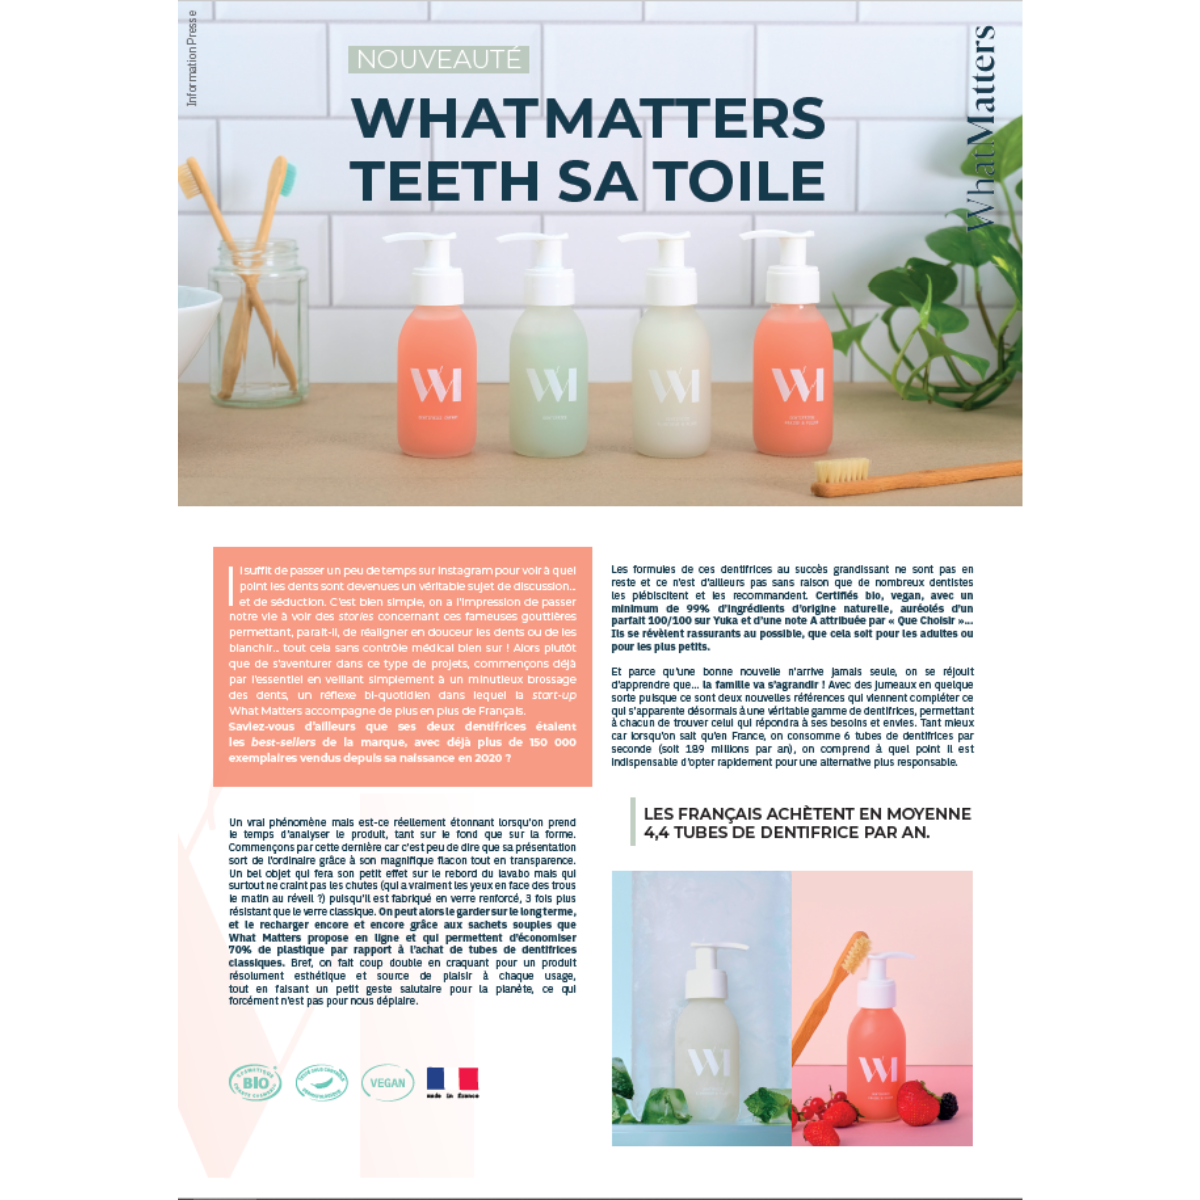 WHAT MATTERS | Les Nouveaux Dentifrices